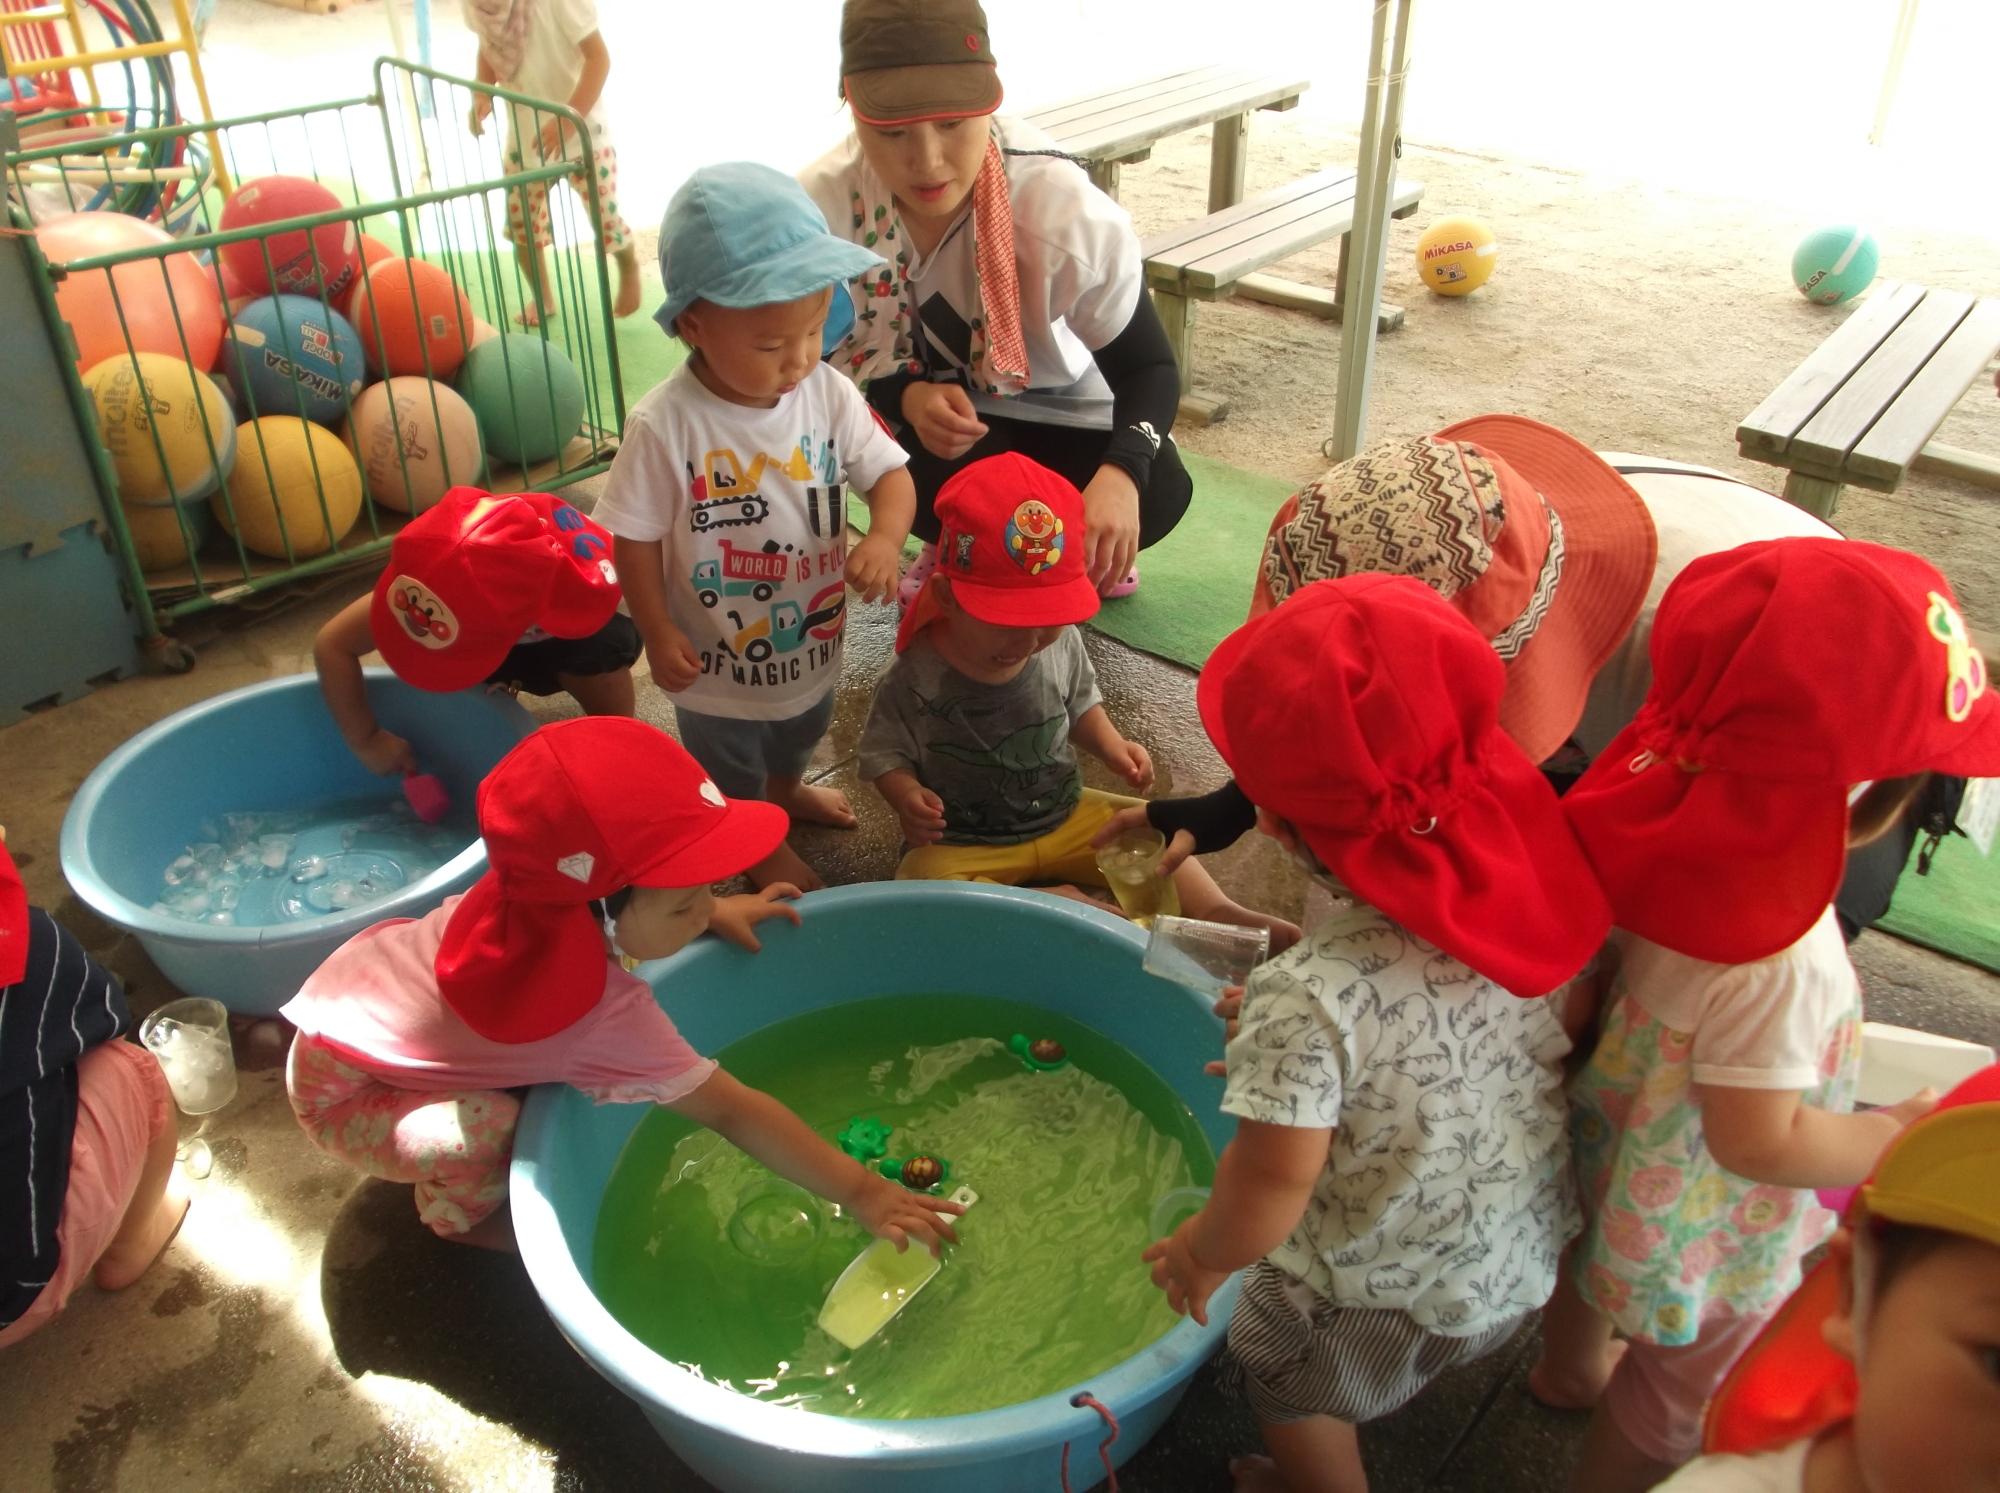 タライの中の緑色の水をペットボトルに汲んでいる子供やタライの中の氷をすくおうとしている子供の写真